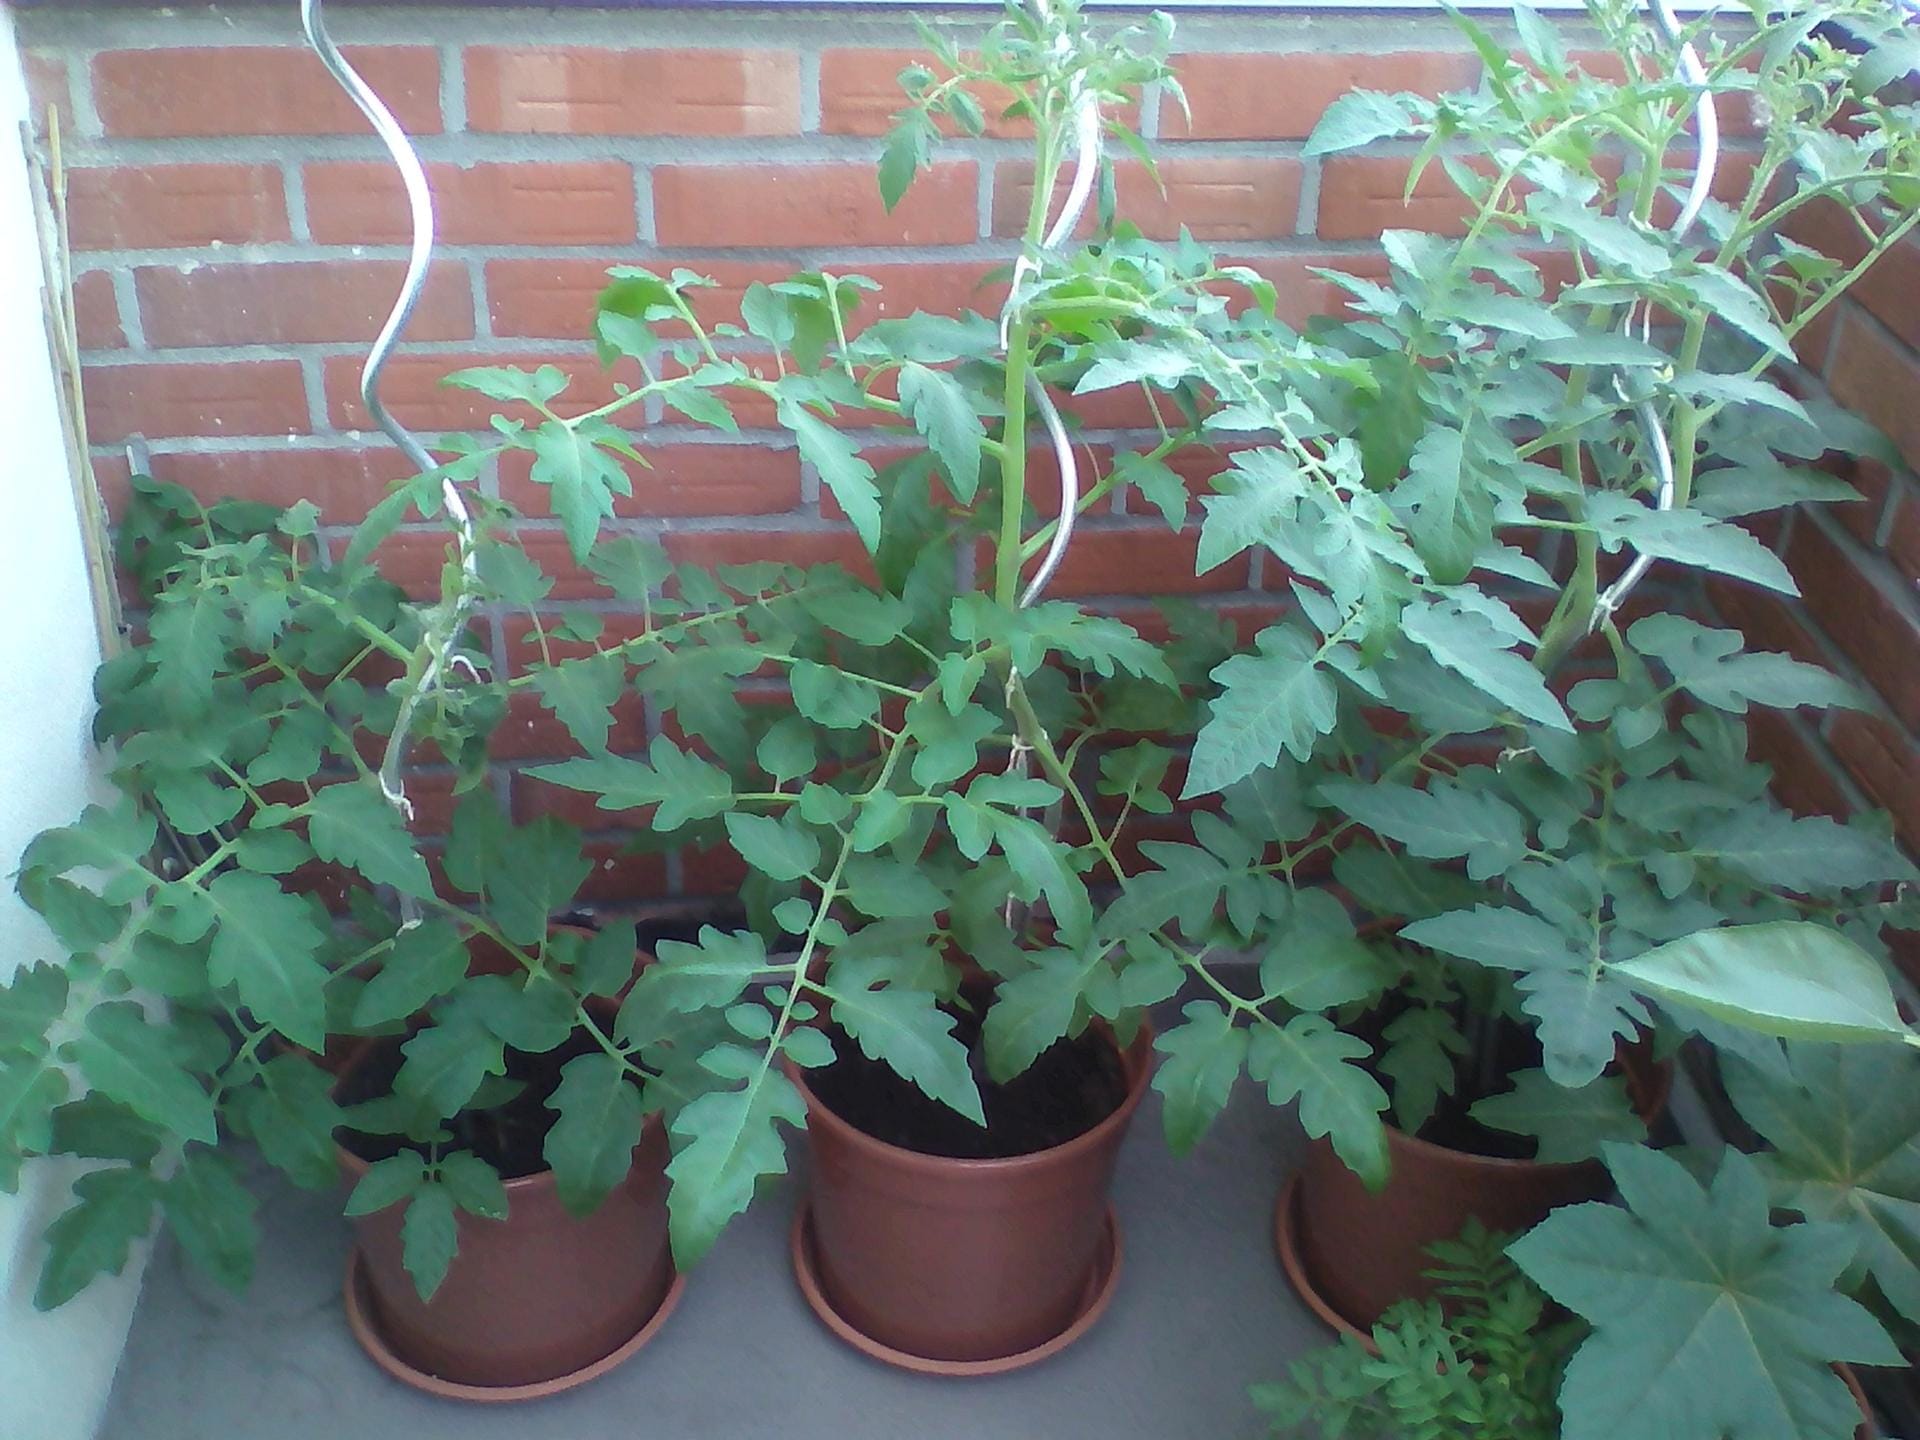 Tomaten in Kübeln: Lidl Tomate (links), Sperli Bio-Tomate (mittig) und Kiepenkerl Tomate (rechts) viereinhalb Wochen nach dem Auspflanzen.